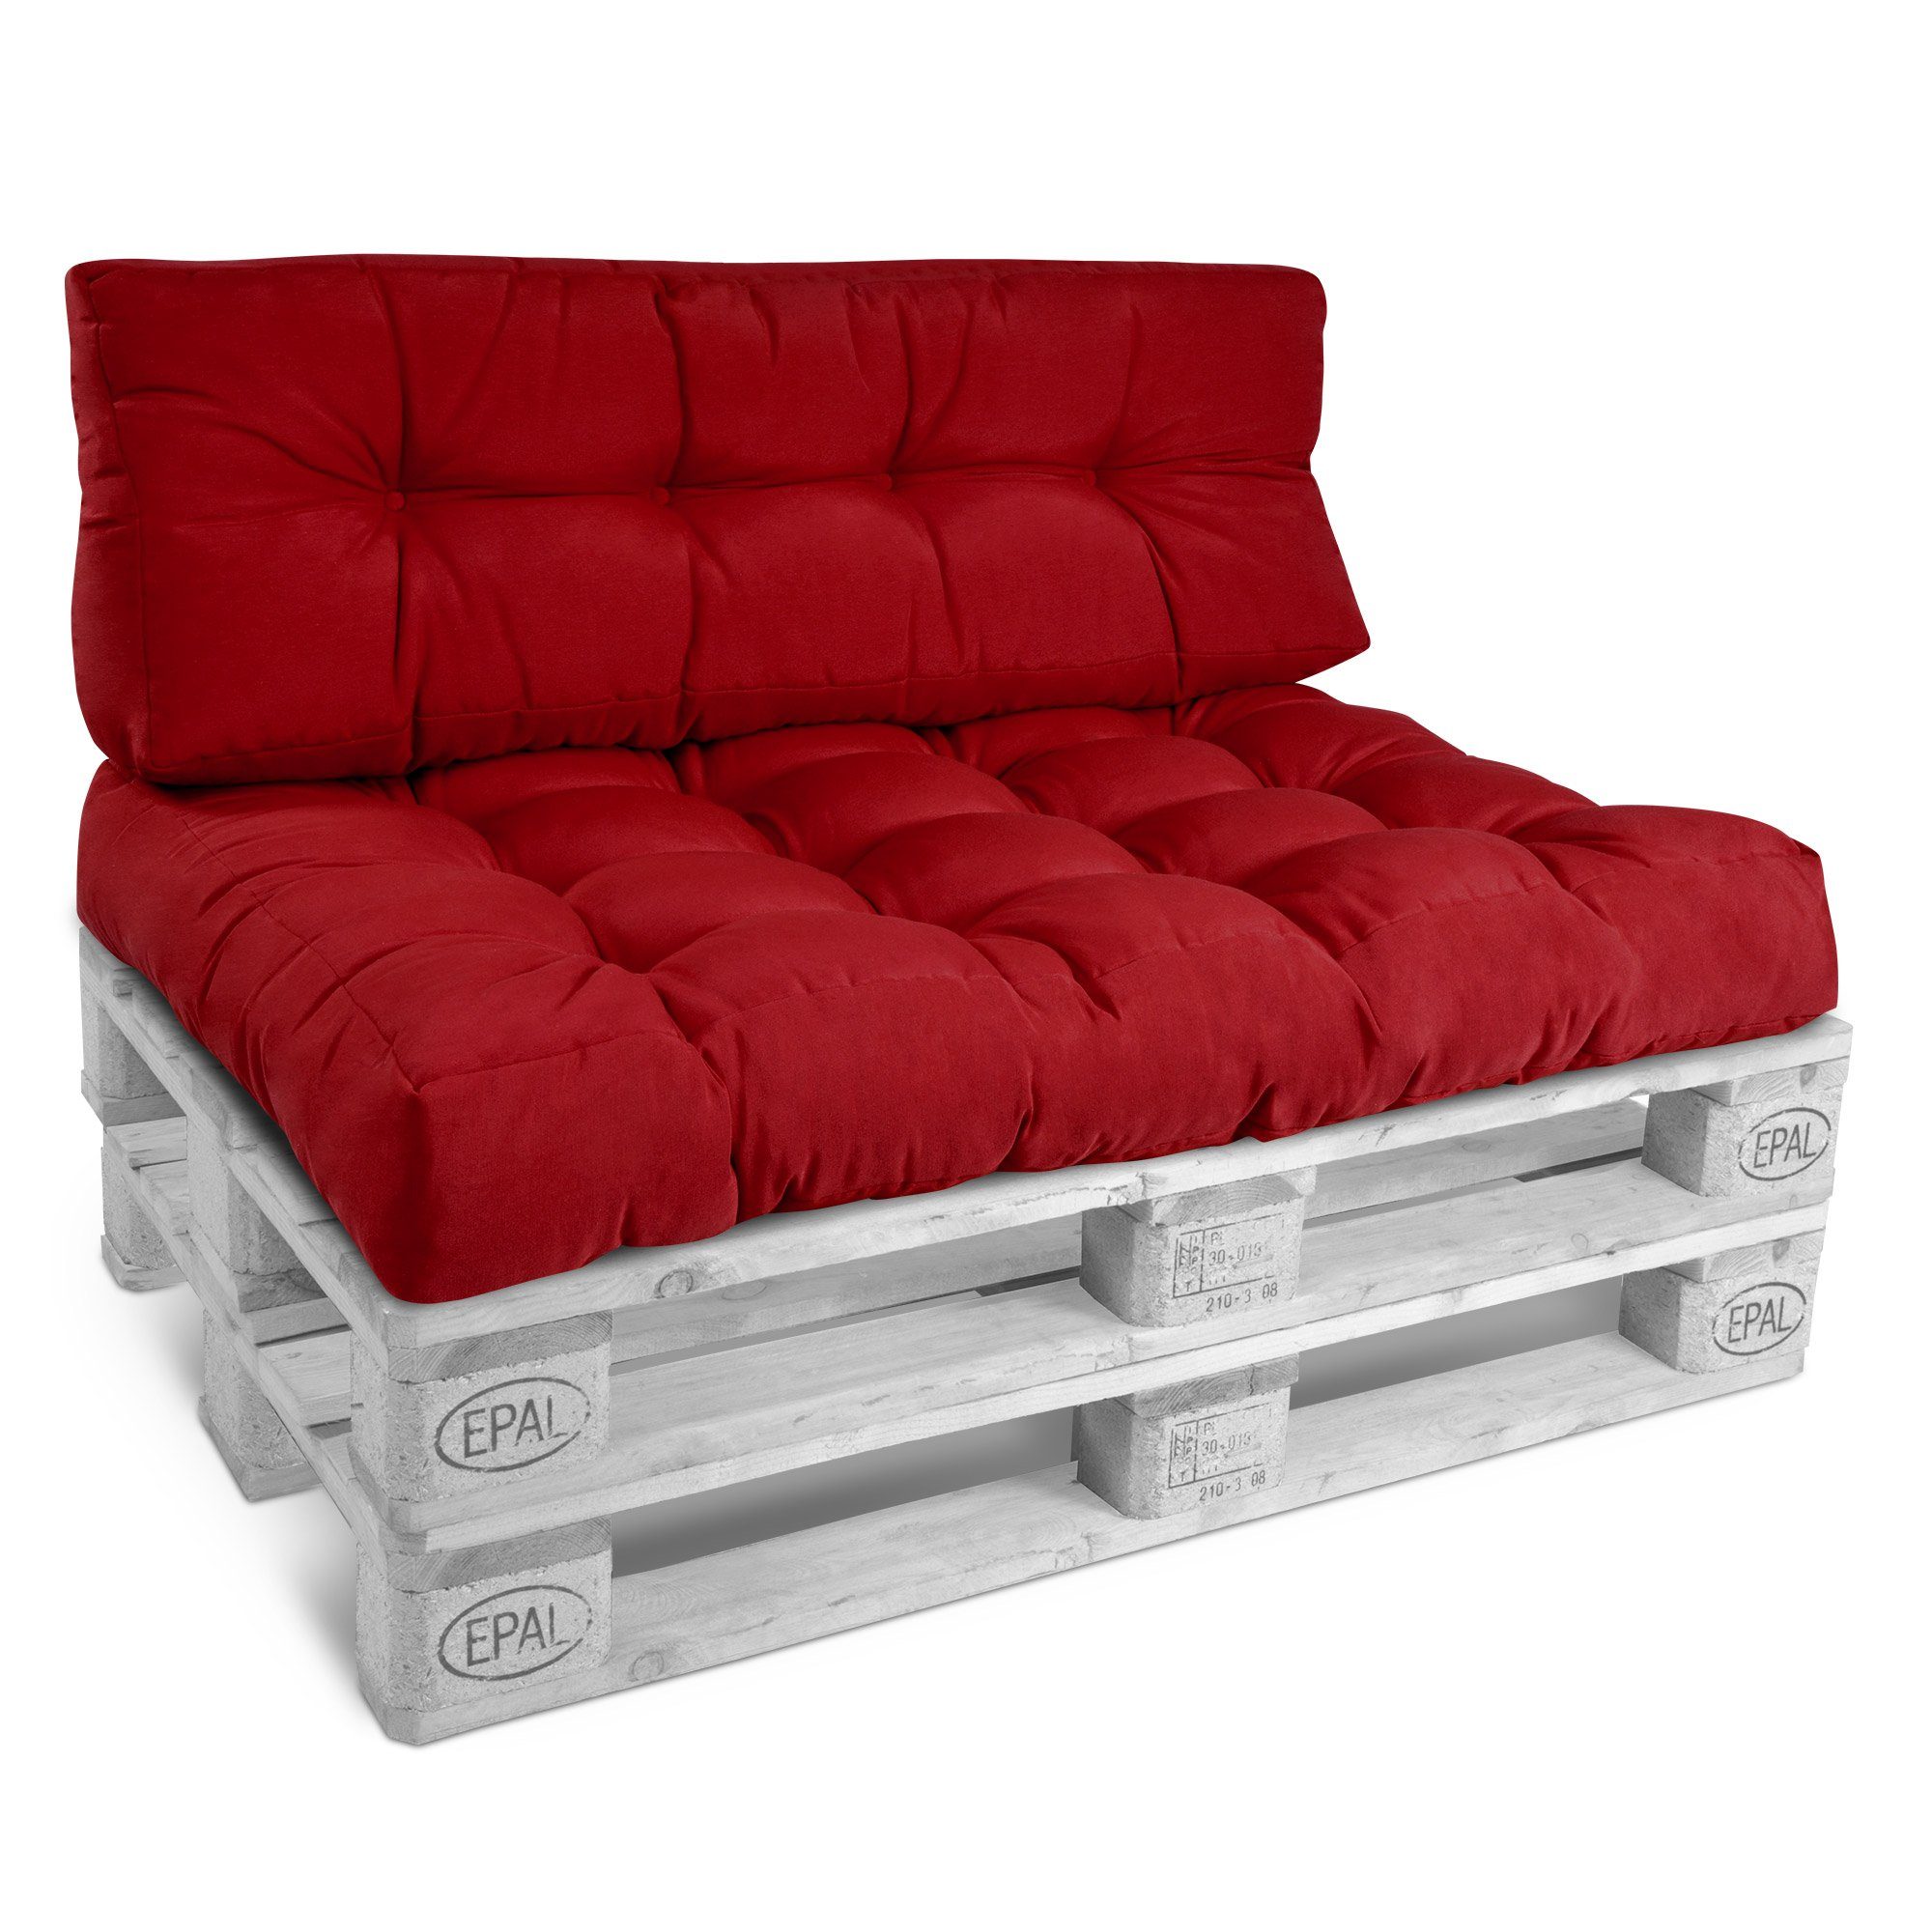 Beautissu Palettenkissen Rot Style, Sitzkissen Rücken 120x40x20cm